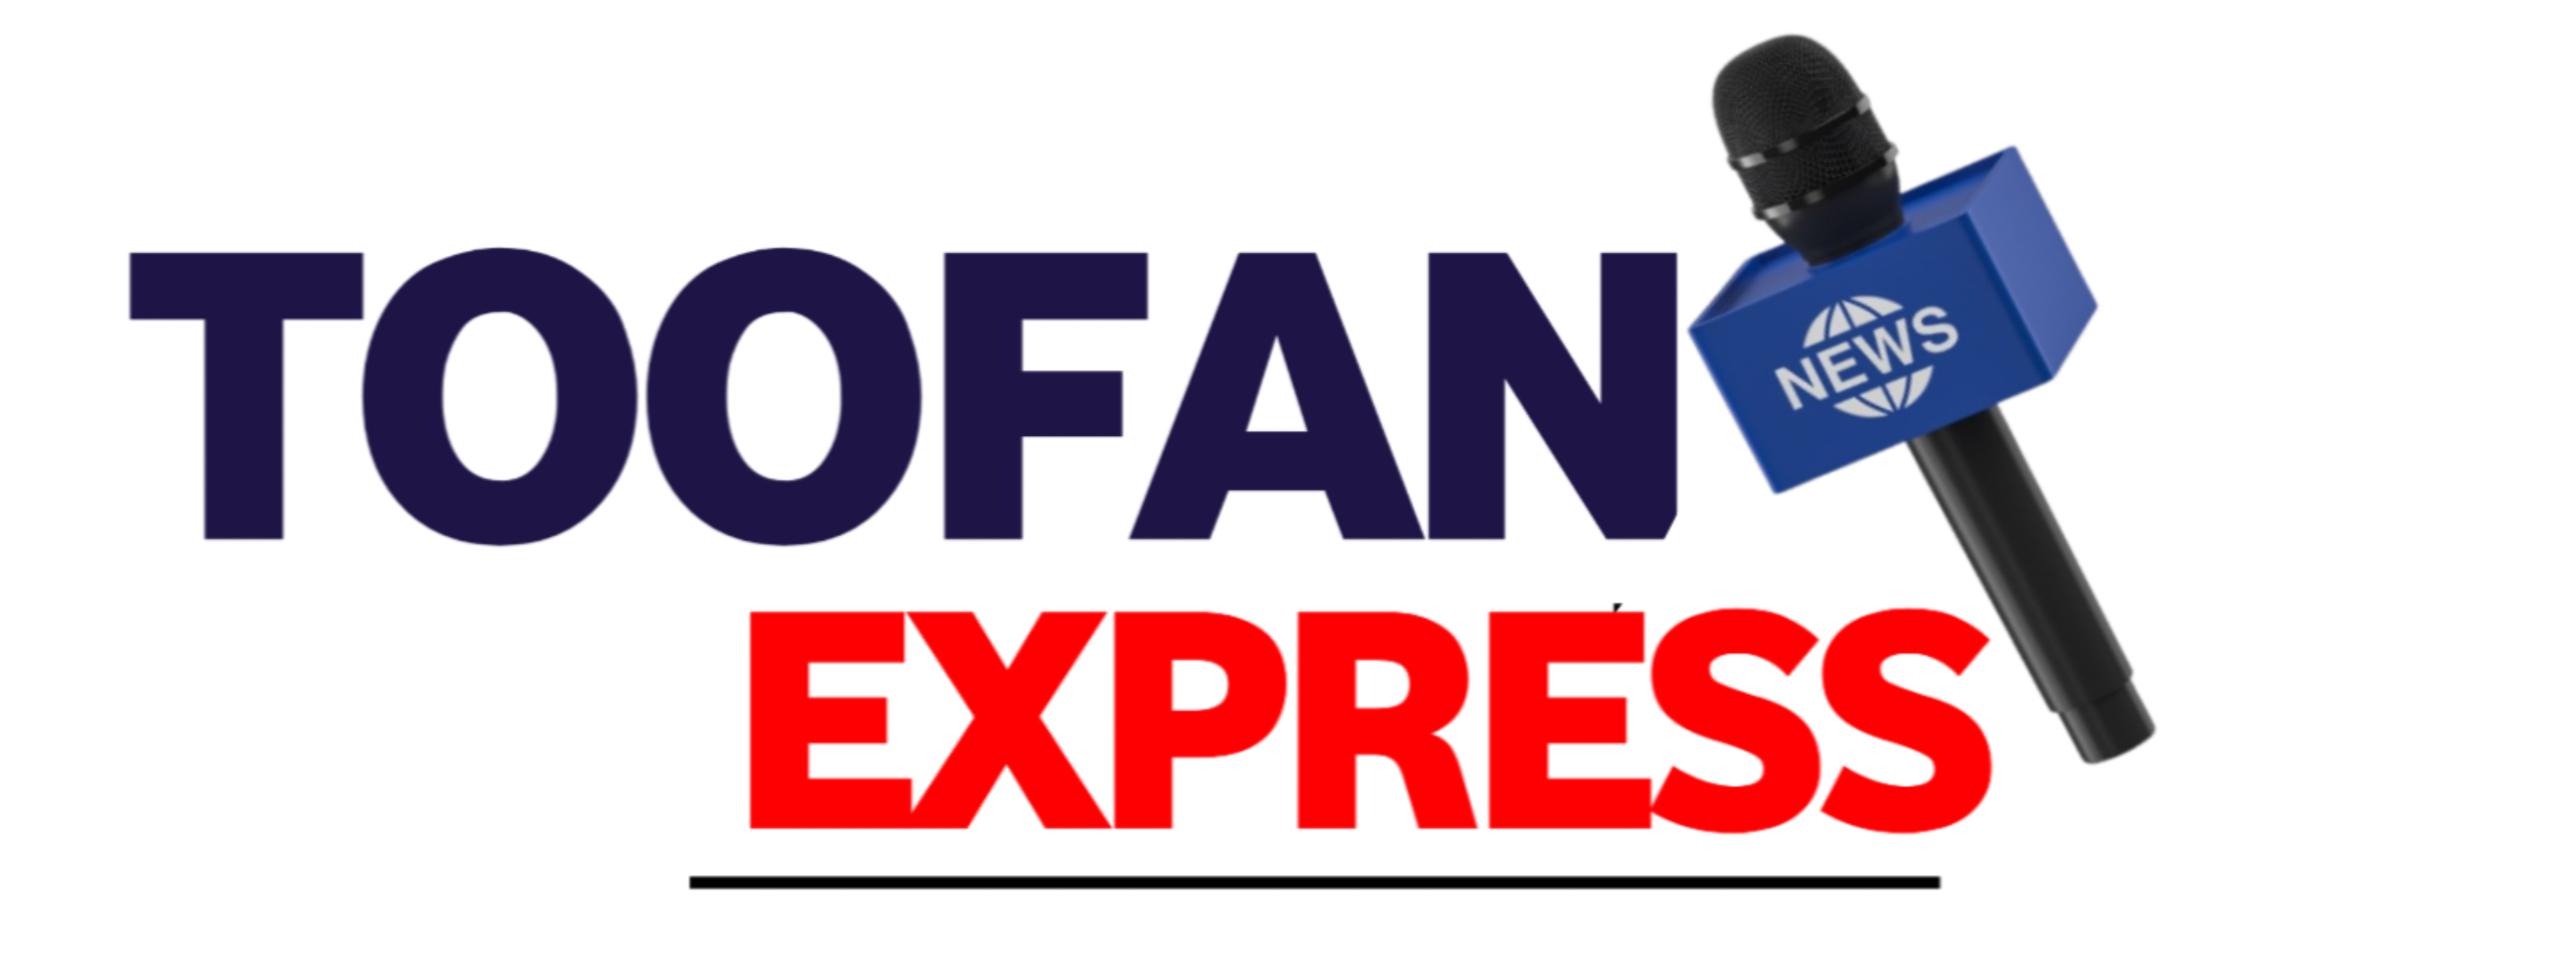 toofan express news